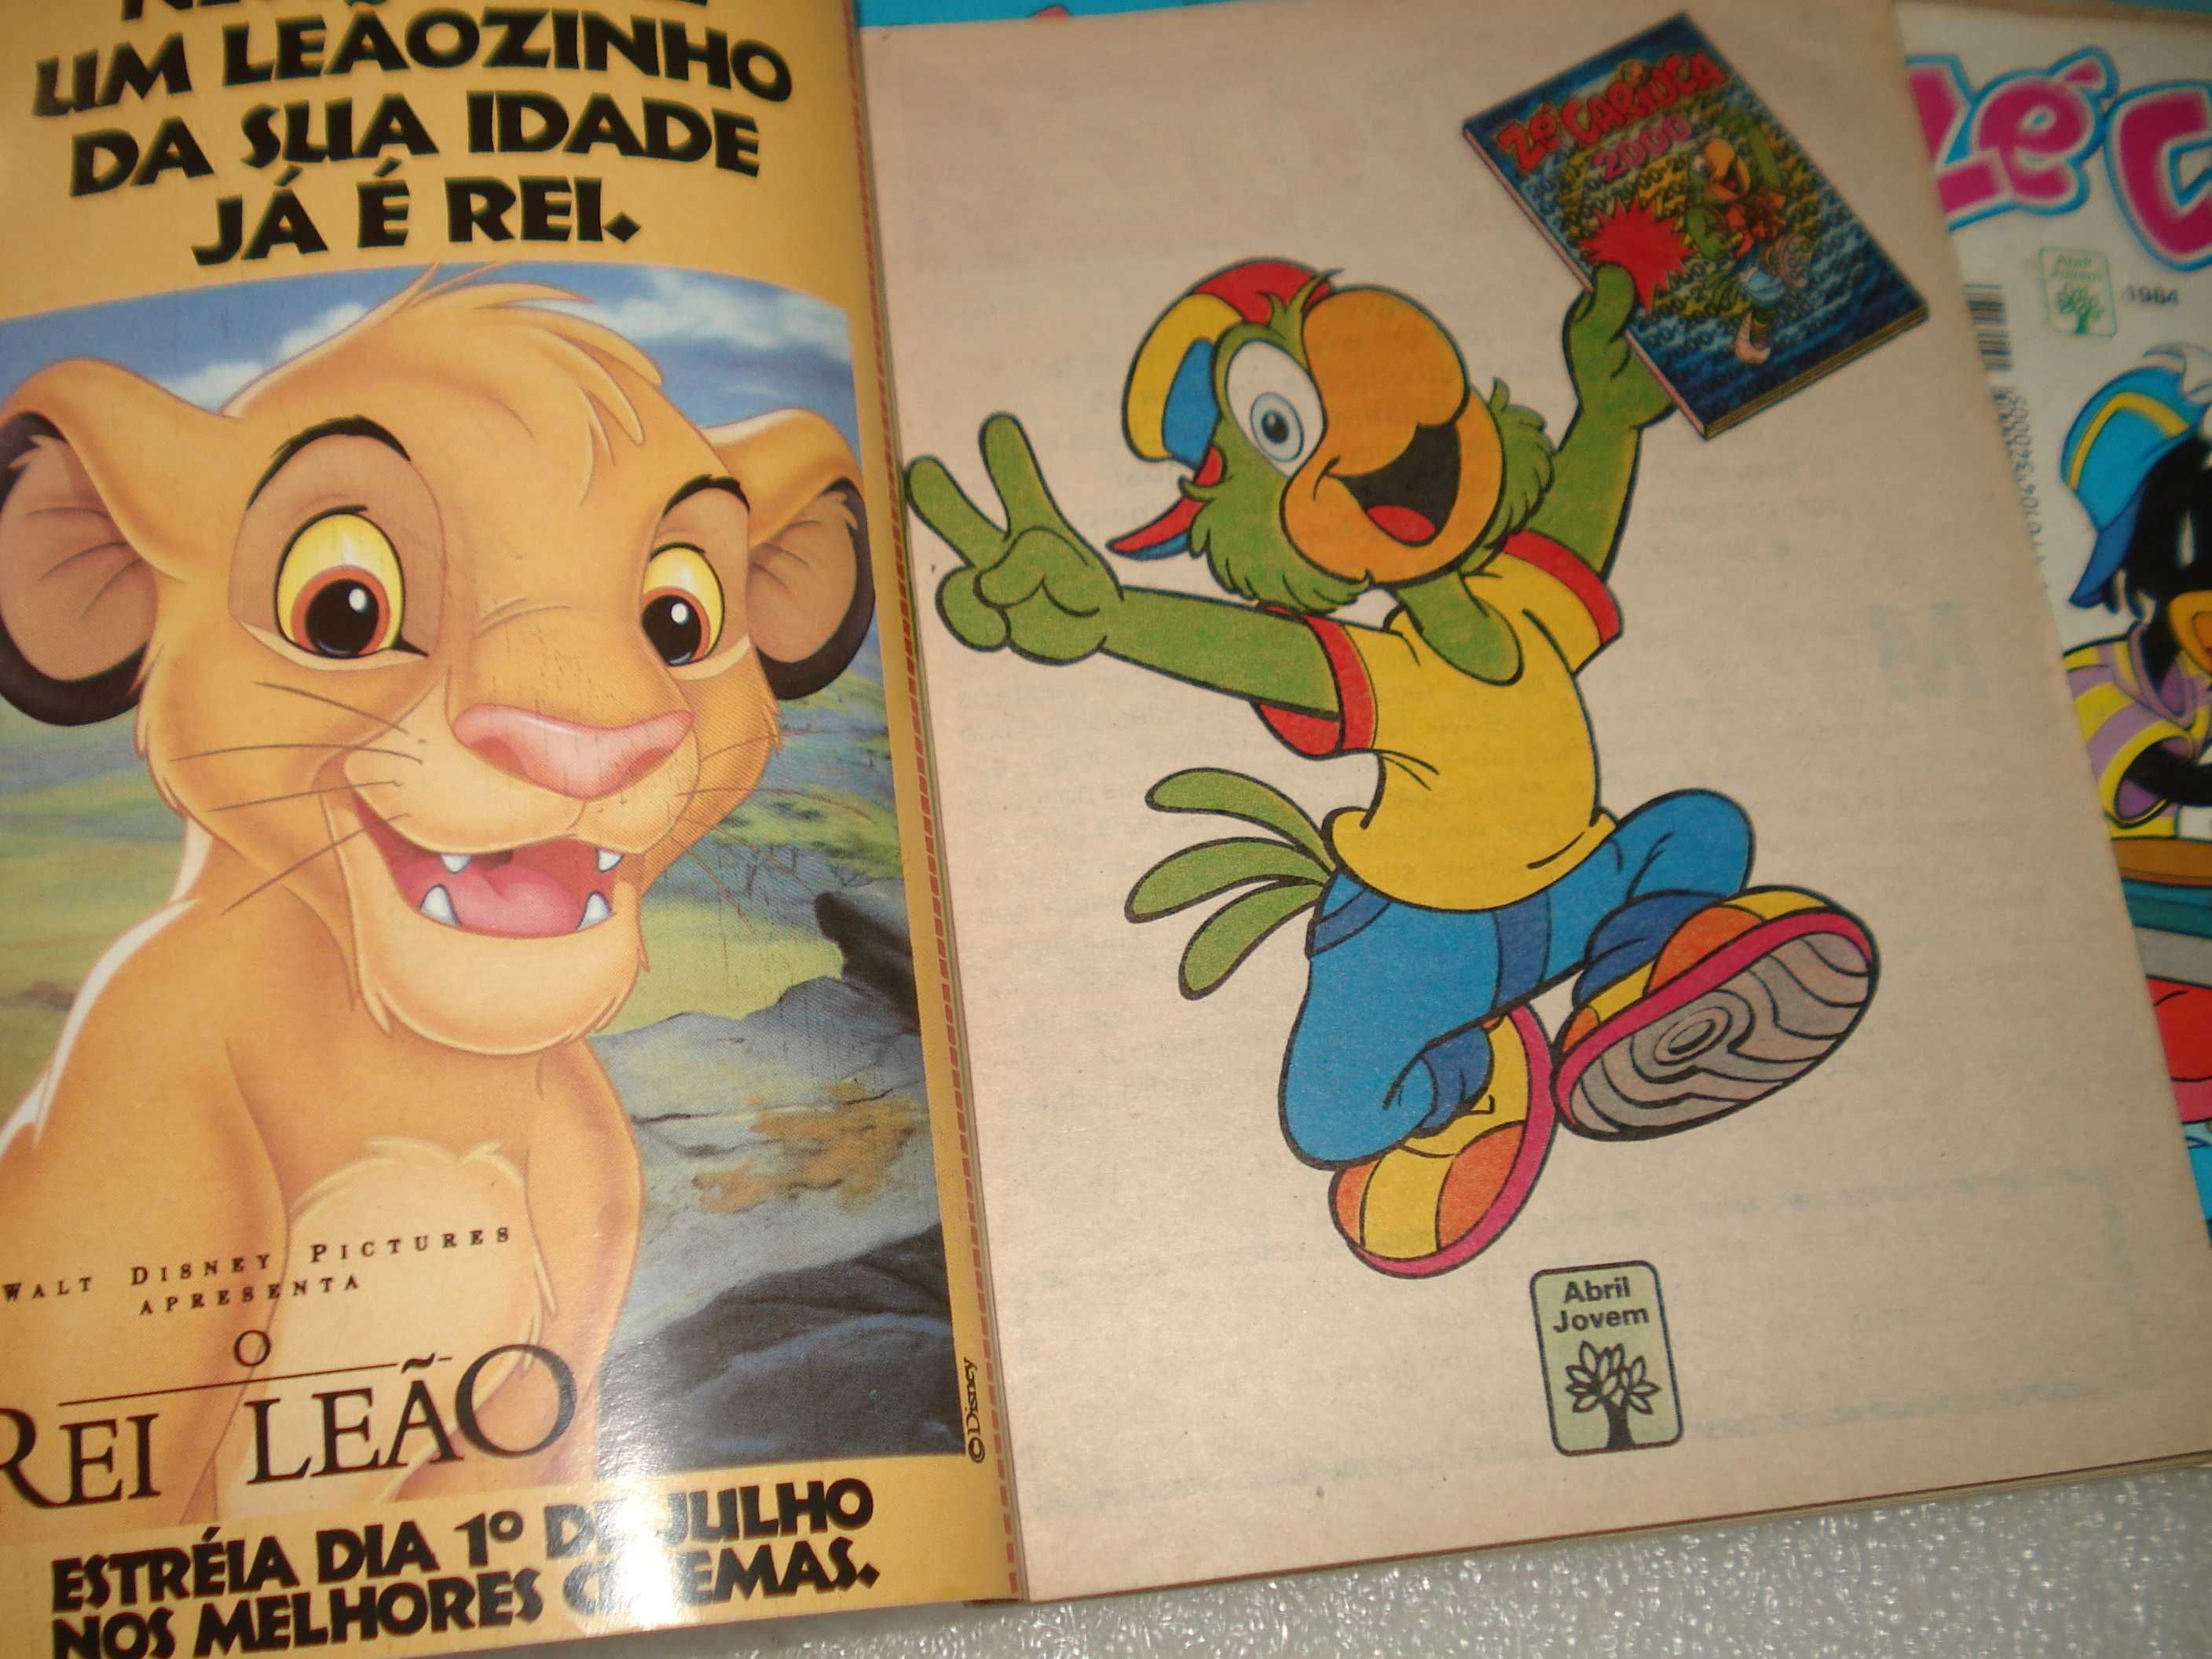 antigas bandas desenhadas do Zé Carioca 1984 a 2000